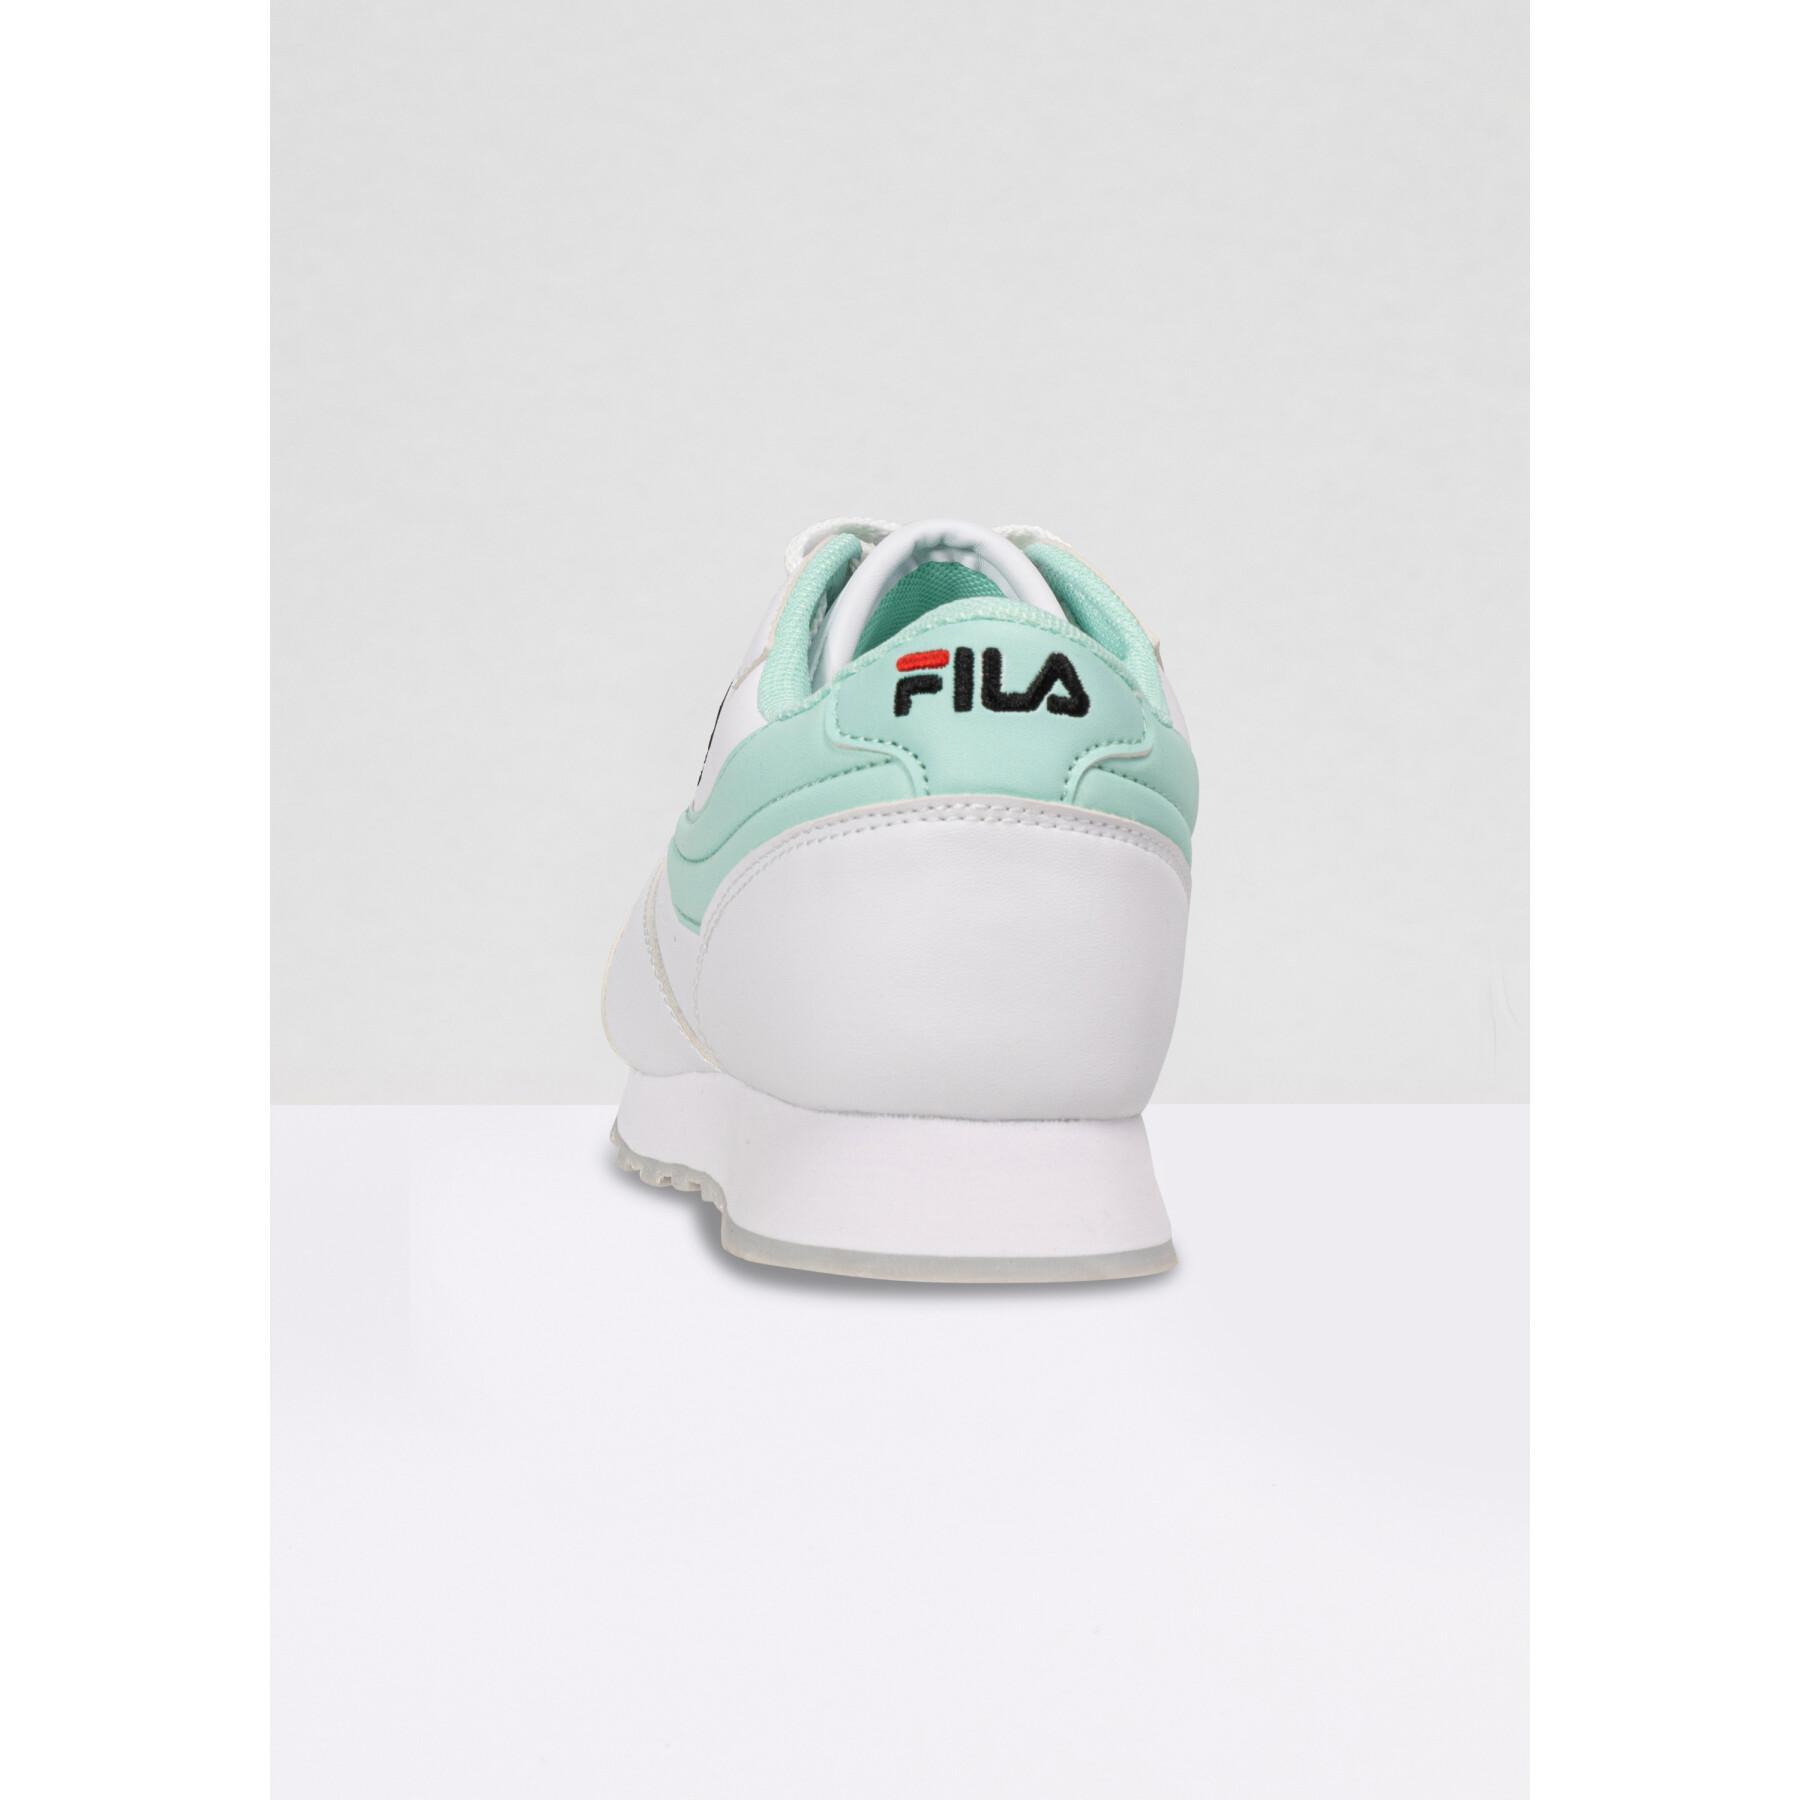 Women's sneakers Fila Orbit